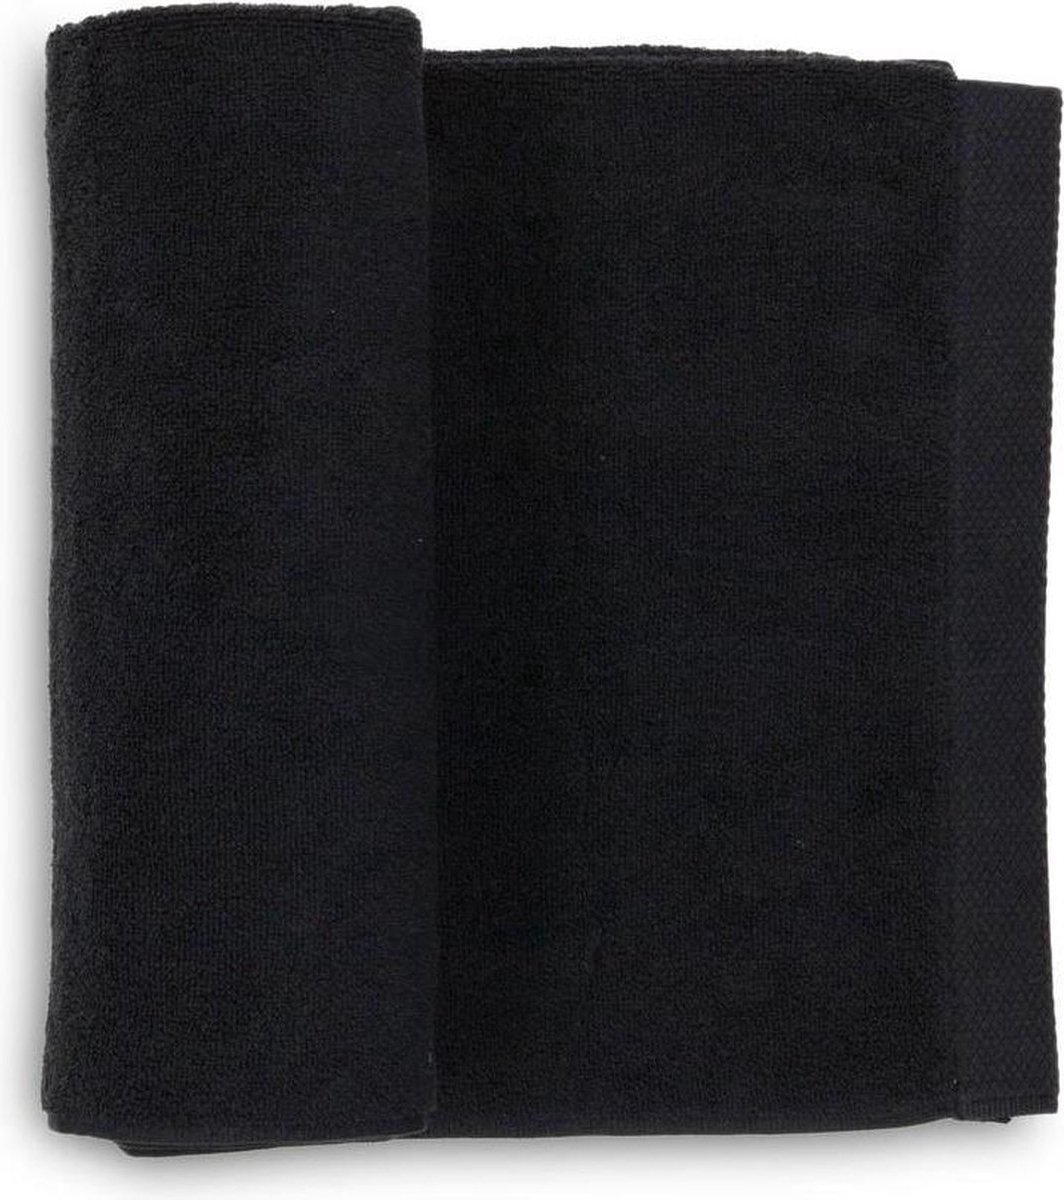 Heckett & Lane 3-pack katoen handdoeken zwart - 50x100 - luxe uitstraling - huidvriendelijk en duurzaam